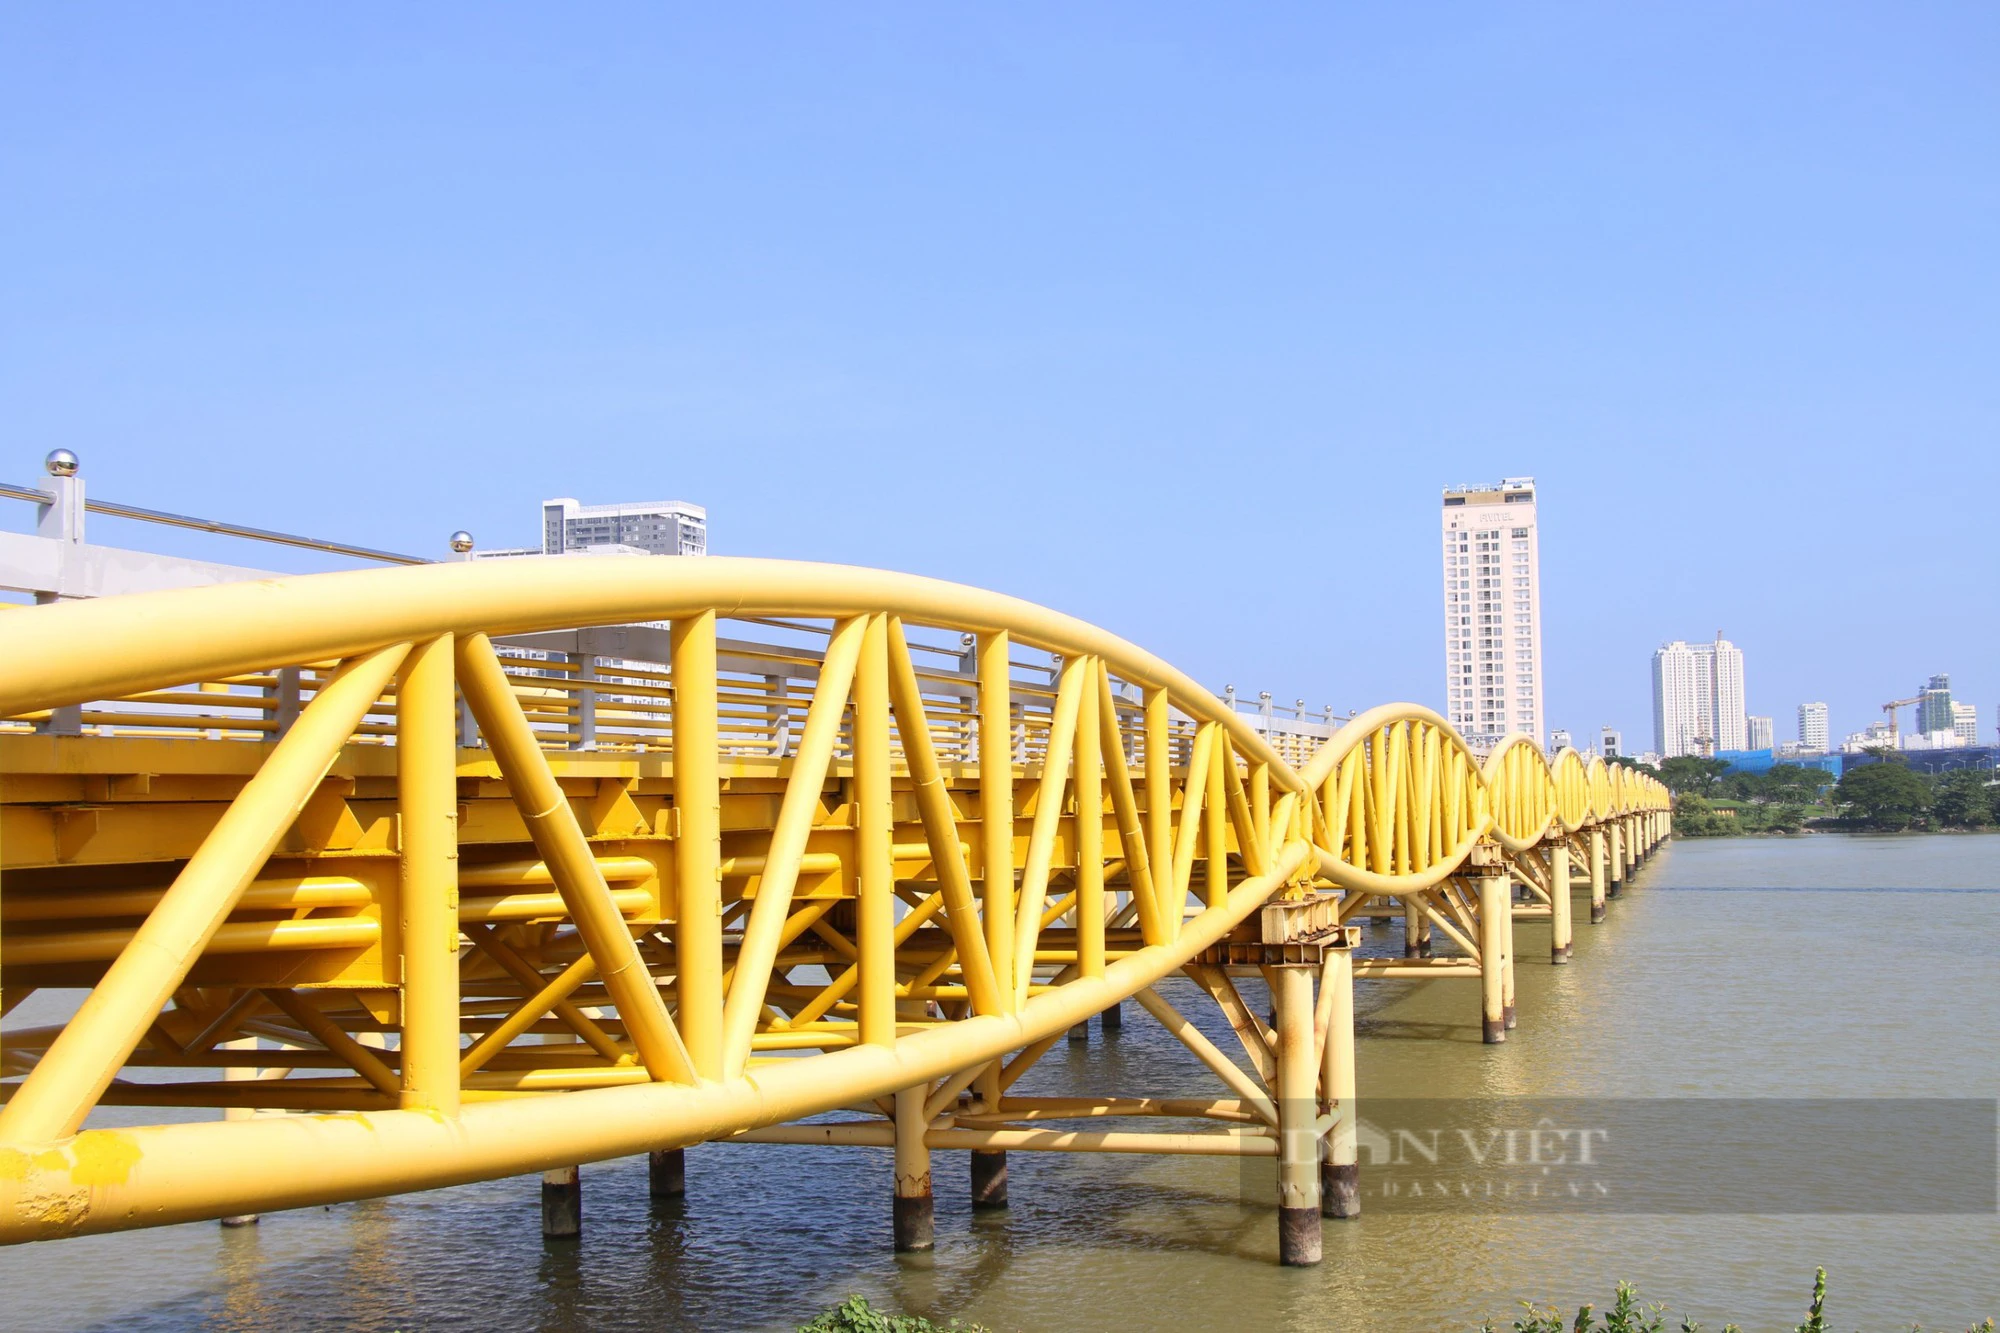 Cây cầu lâu đời nhất Đà Nẵng sẽ trở thành điểm du lịch đêm - Ảnh 2.